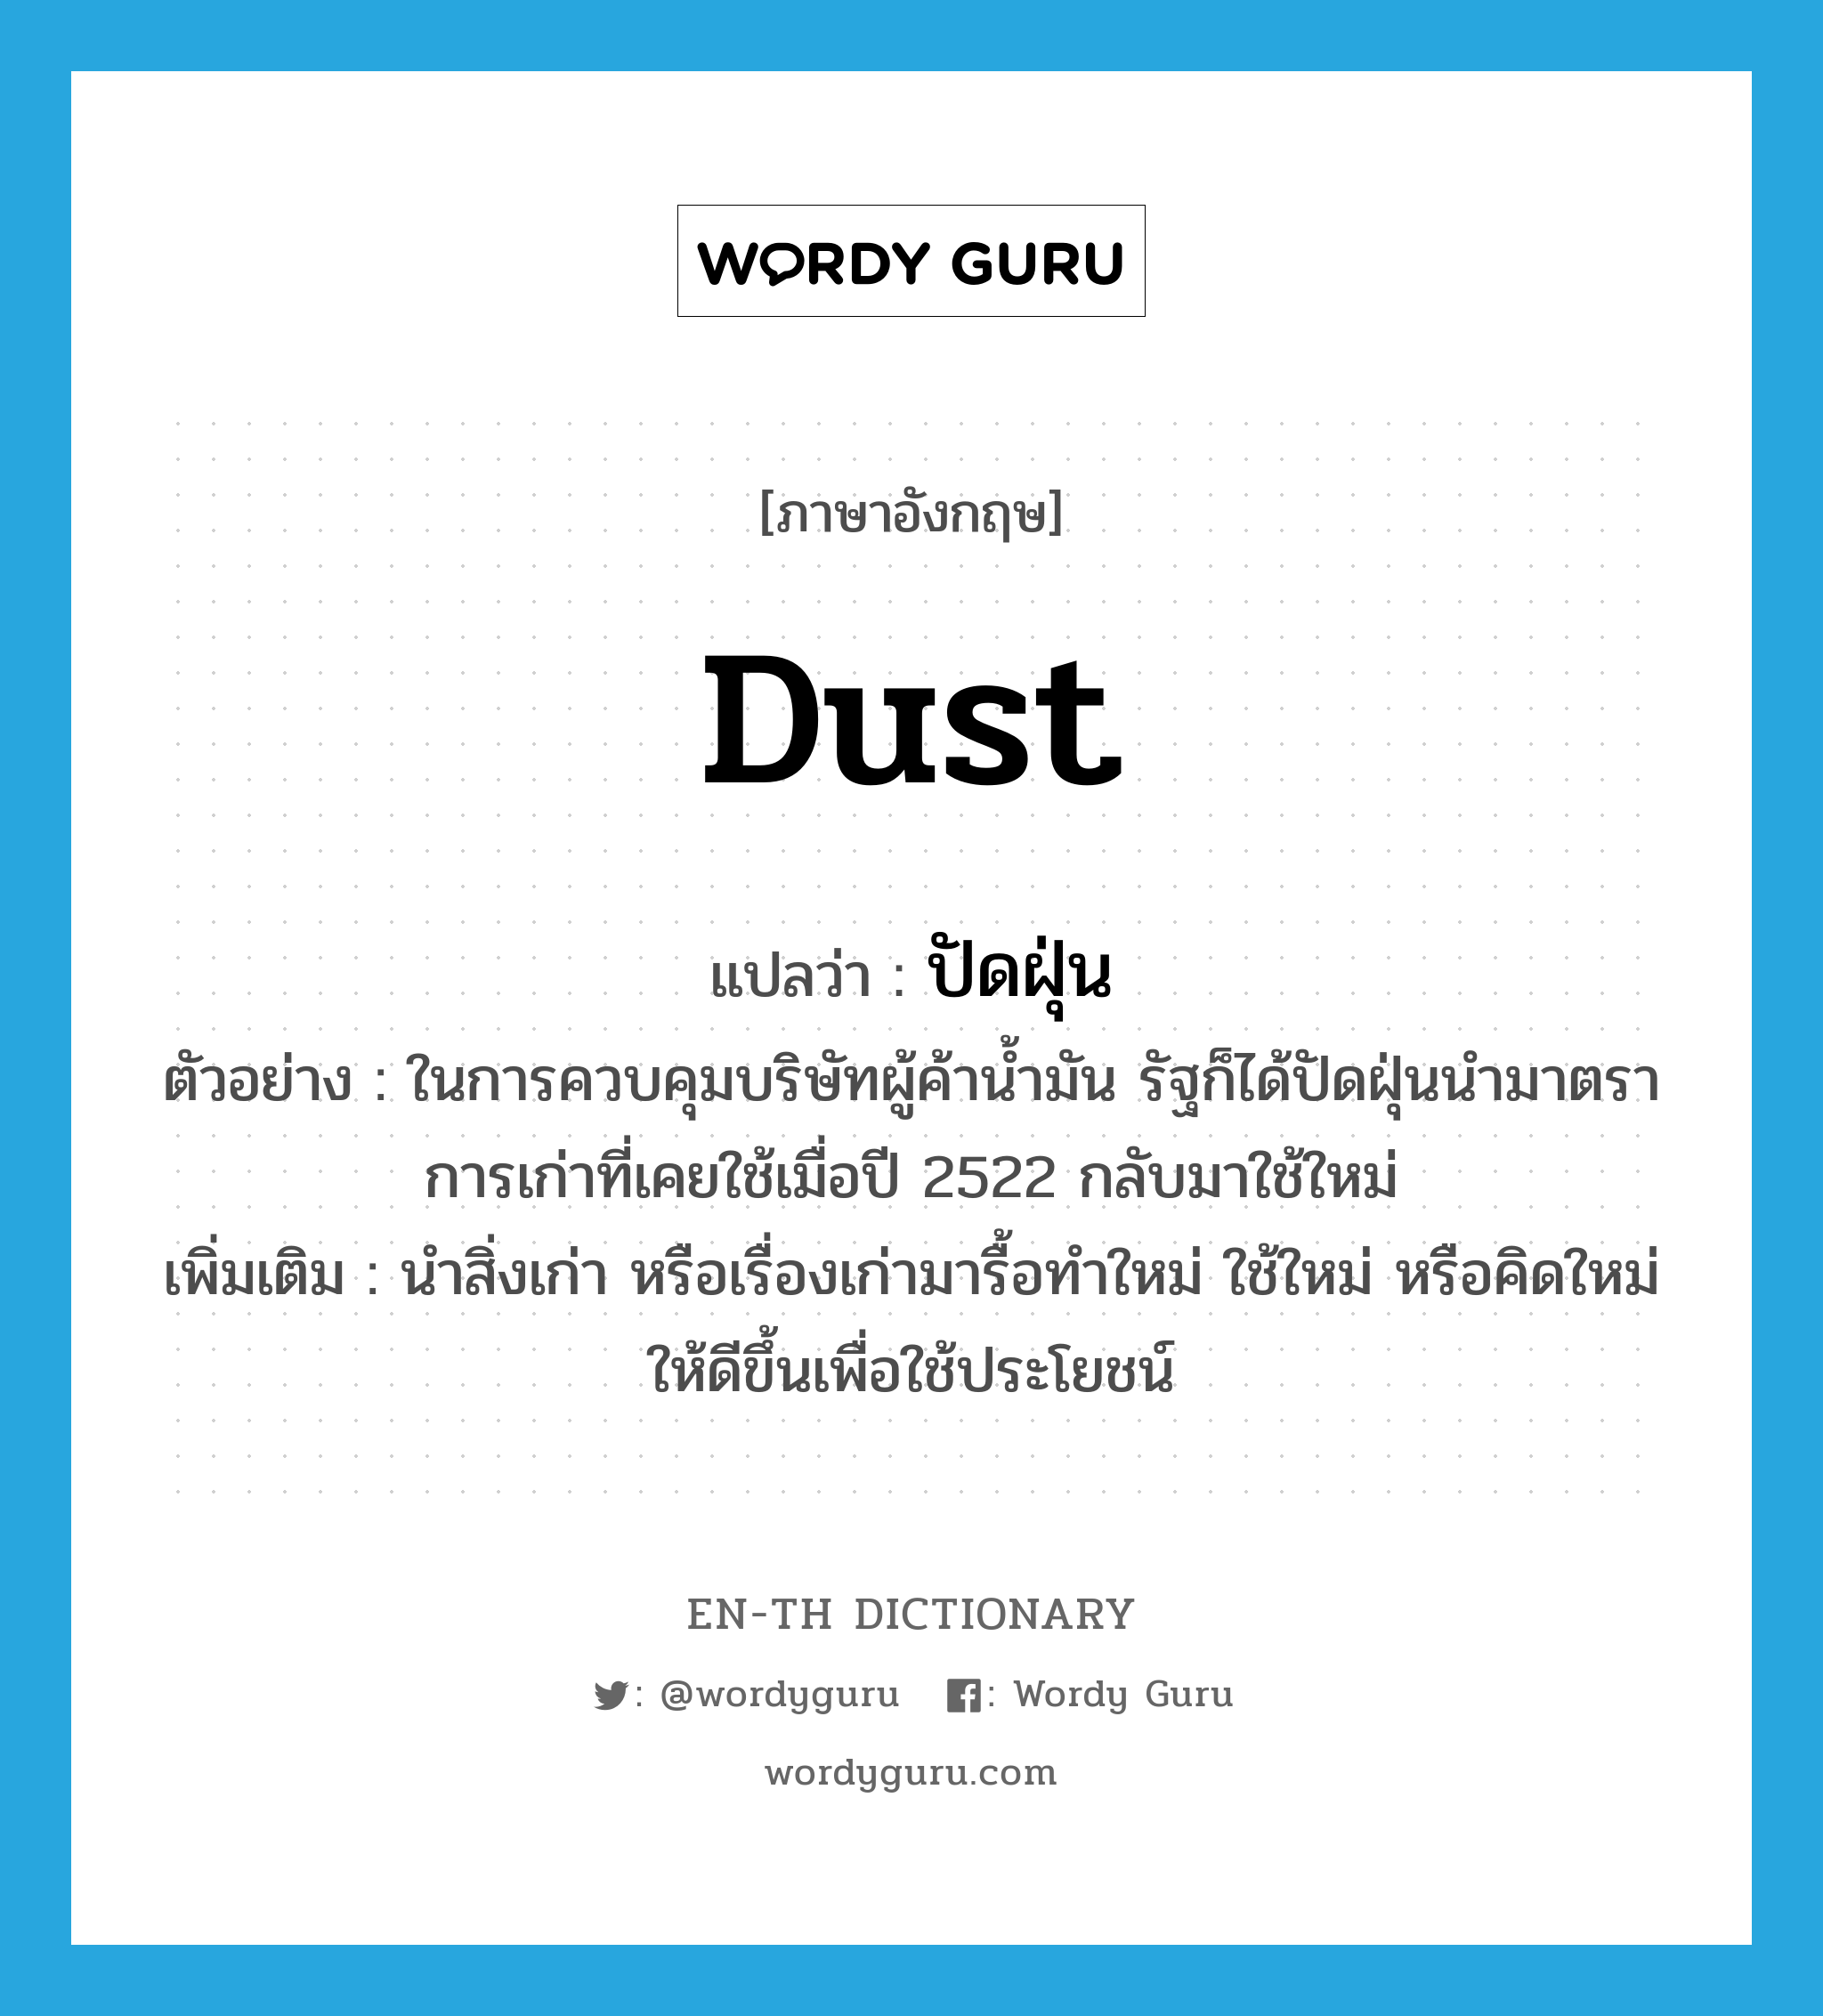 dust แปลว่า?, คำศัพท์ภาษาอังกฤษ dust แปลว่า ปัดฝุ่น ประเภท V ตัวอย่าง ในการควบคุมบริษัทผู้ค้าน้ำมัน รัฐก็ได้ปัดฝุ่นนำมาตราการเก่าที่เคยใช้เมื่อปี 2522 กลับมาใช้ใหม่ เพิ่มเติม นำสิ่งเก่า หรือเรื่องเก่ามารื้อทำใหม่ ใช้ใหม่ หรือคิดใหม่ให้ดีขึ้นเพื่อใช้ประโยชน์ หมวด V